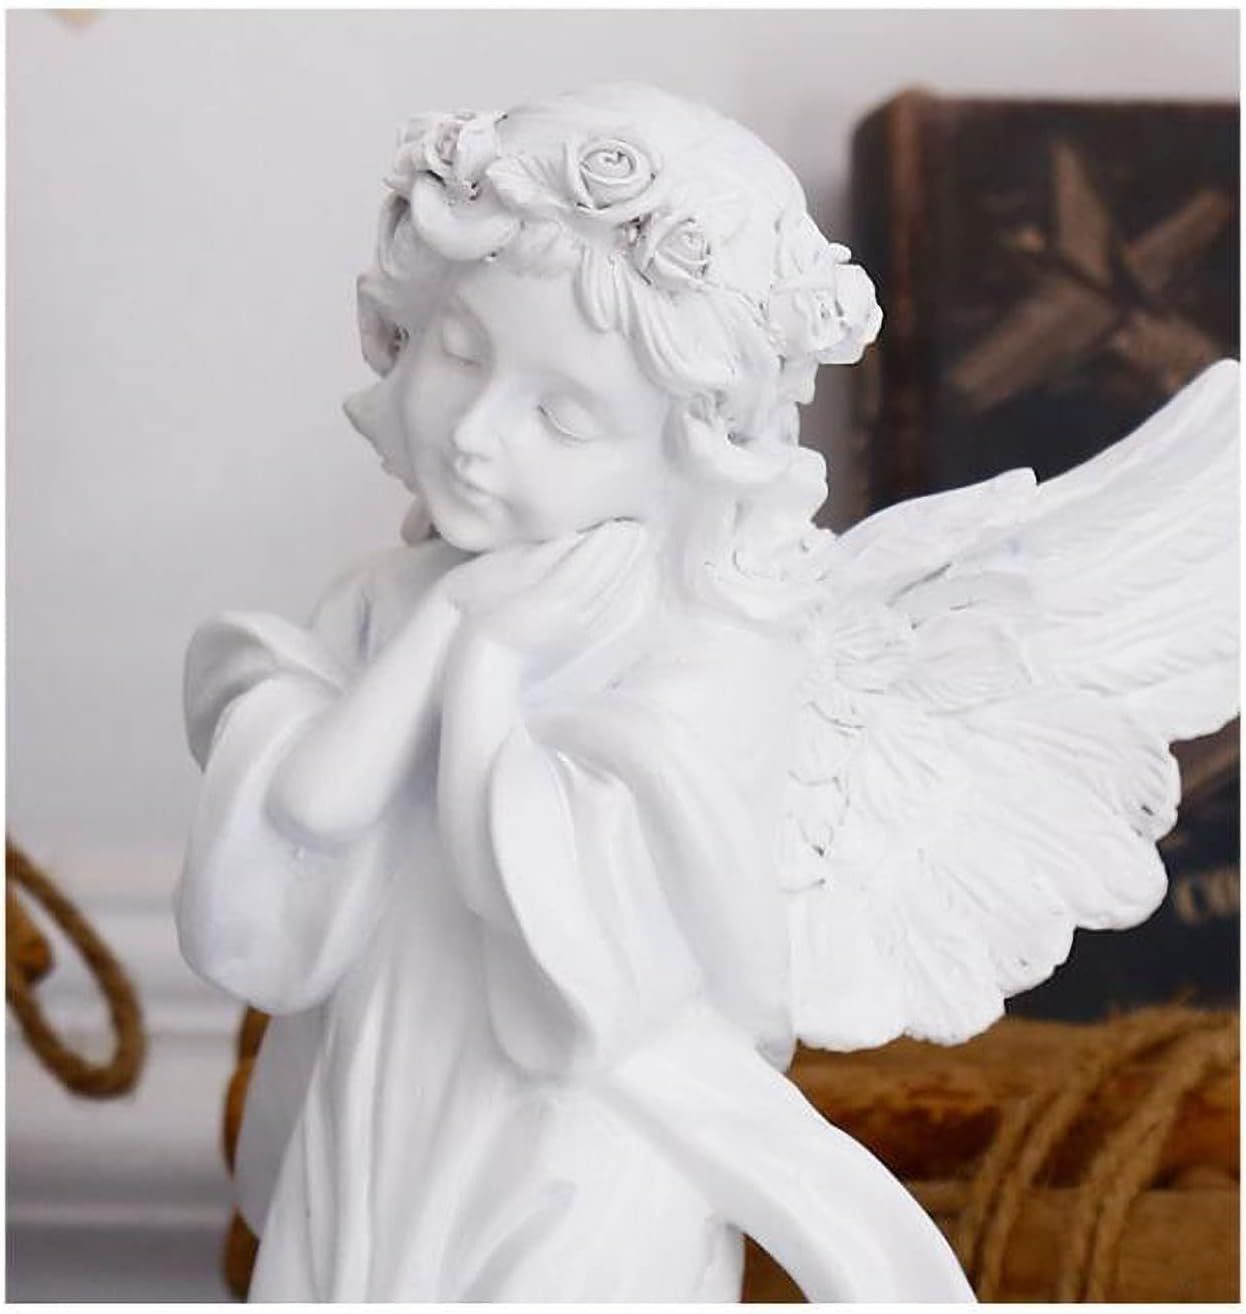 天使 置物 オブジェ お祈り エンジェル インテリア 平和 祈る天使像 ガーデニング 工芸品 ギフト プレゼント 樹脂製 ホワイト - メルカリ